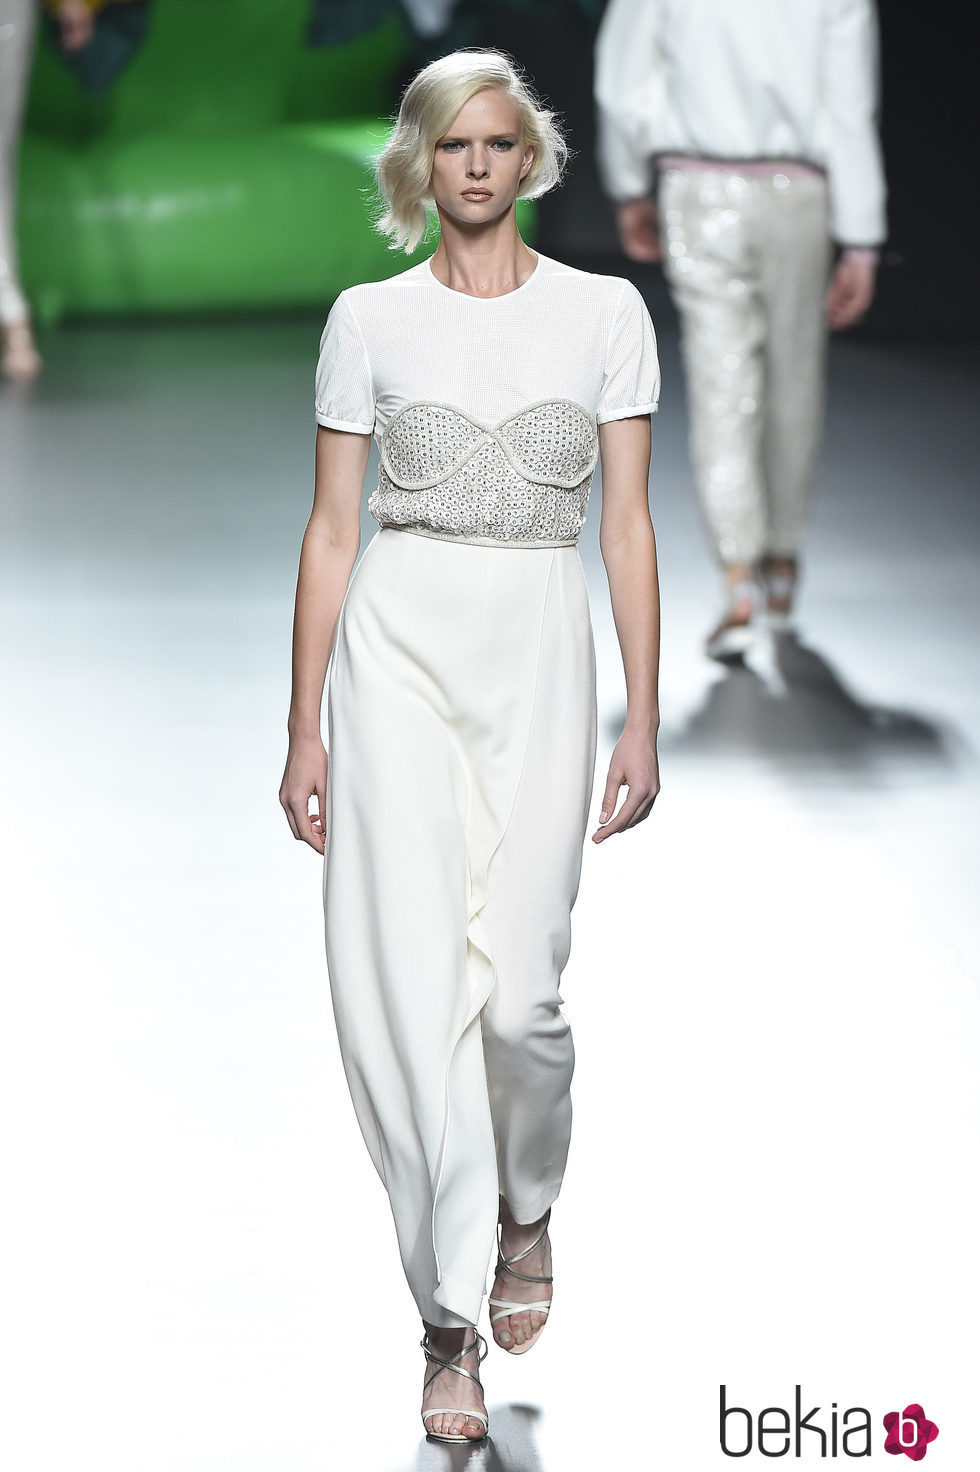 Vestido blanco de la colección de primavera/verano 2016 de Ana Locking en Madrid Fashion Week